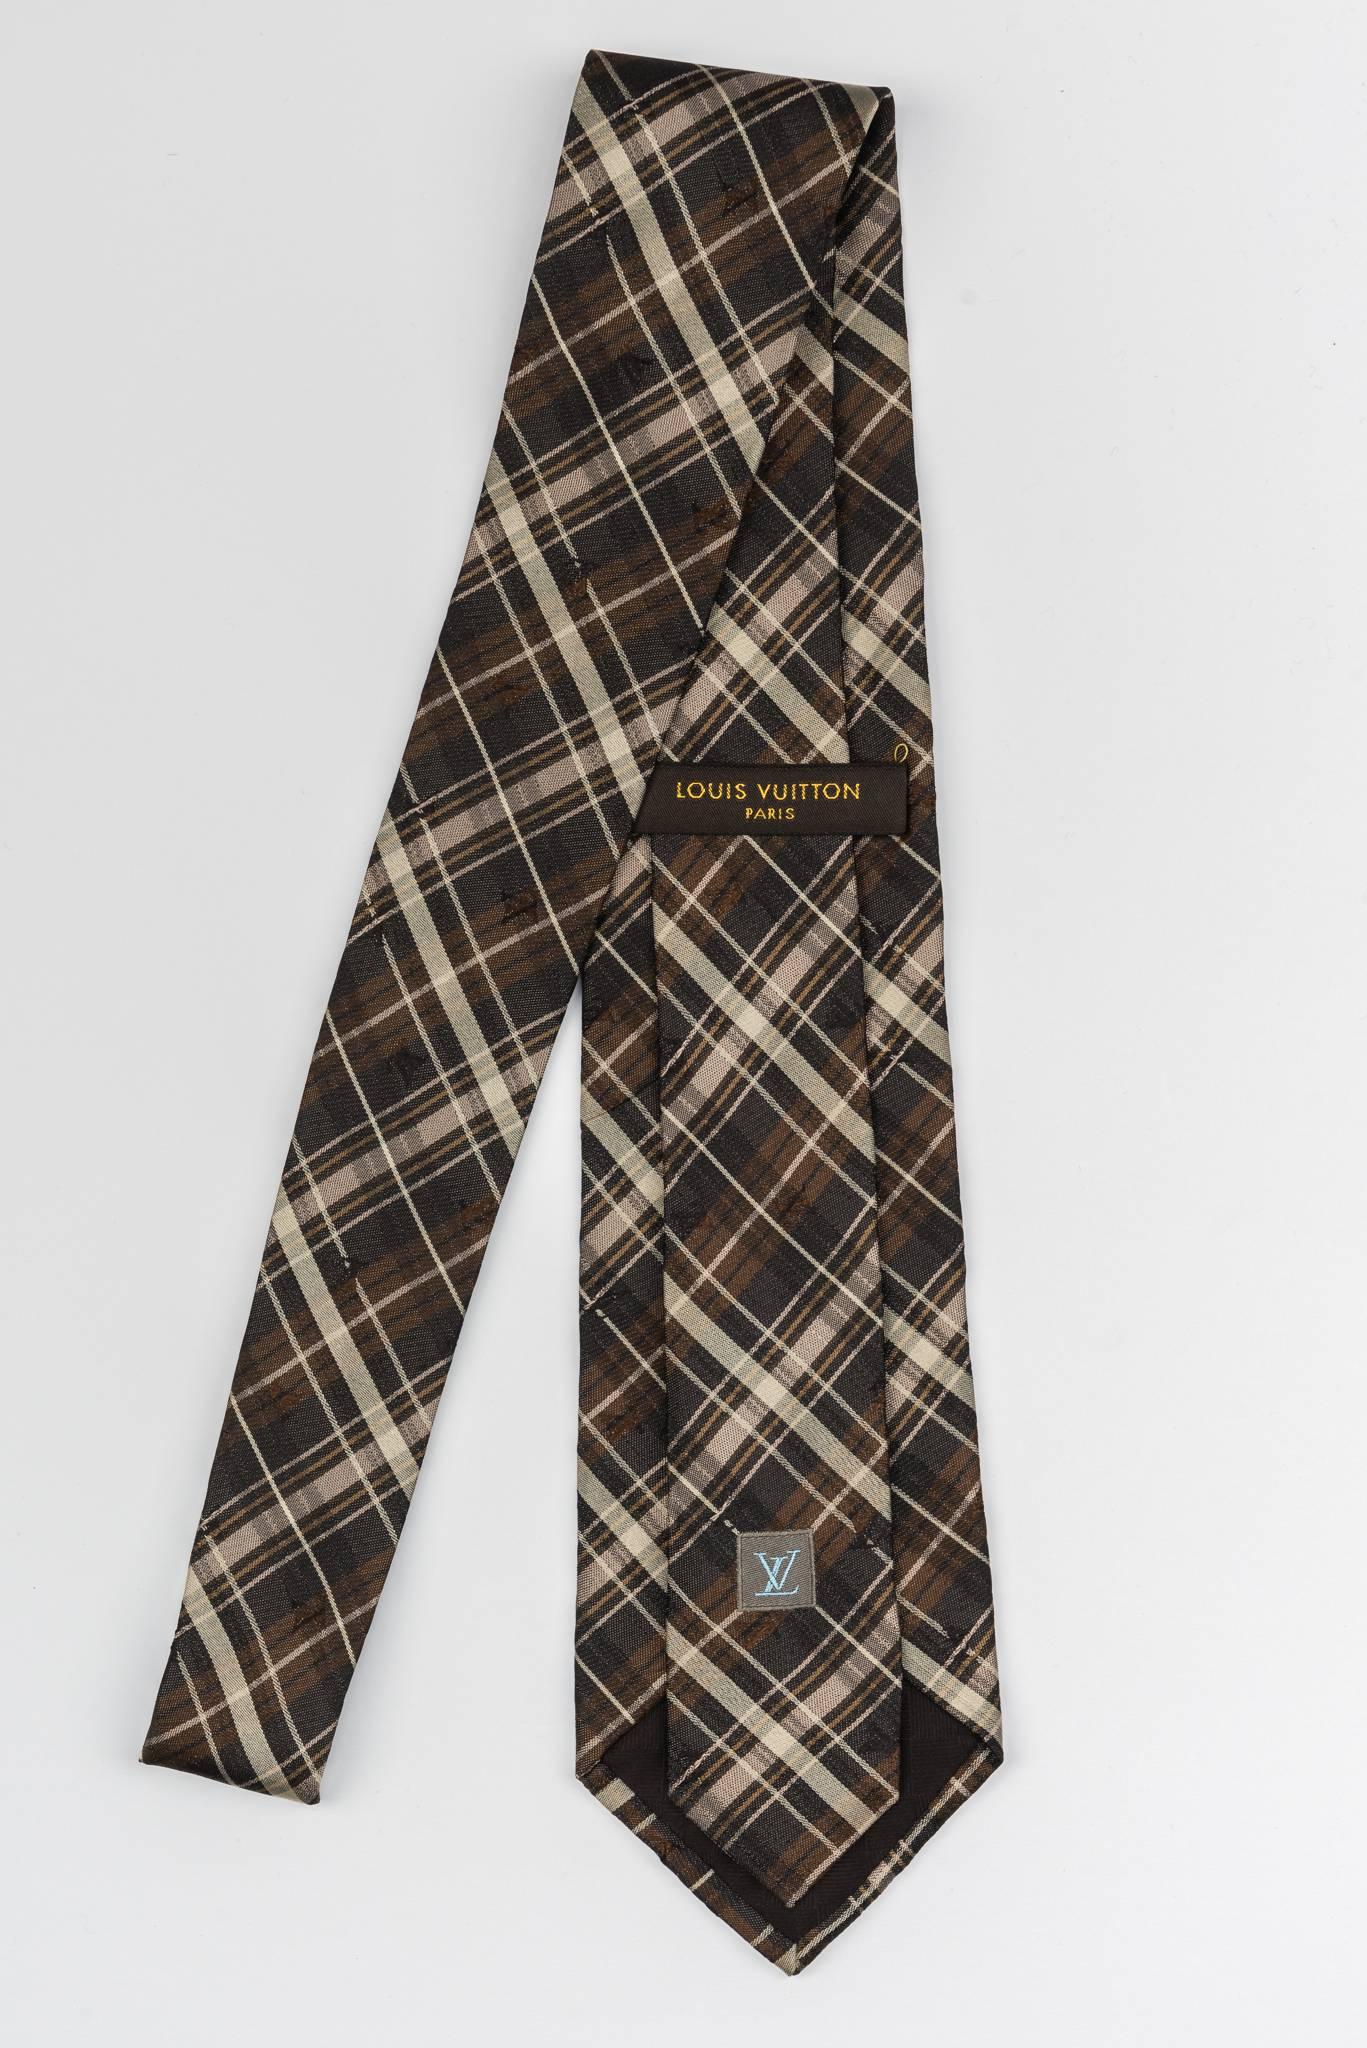 New Louis Vuitton silk brown plaid tie in original packaging. Excellent unworn condition. 